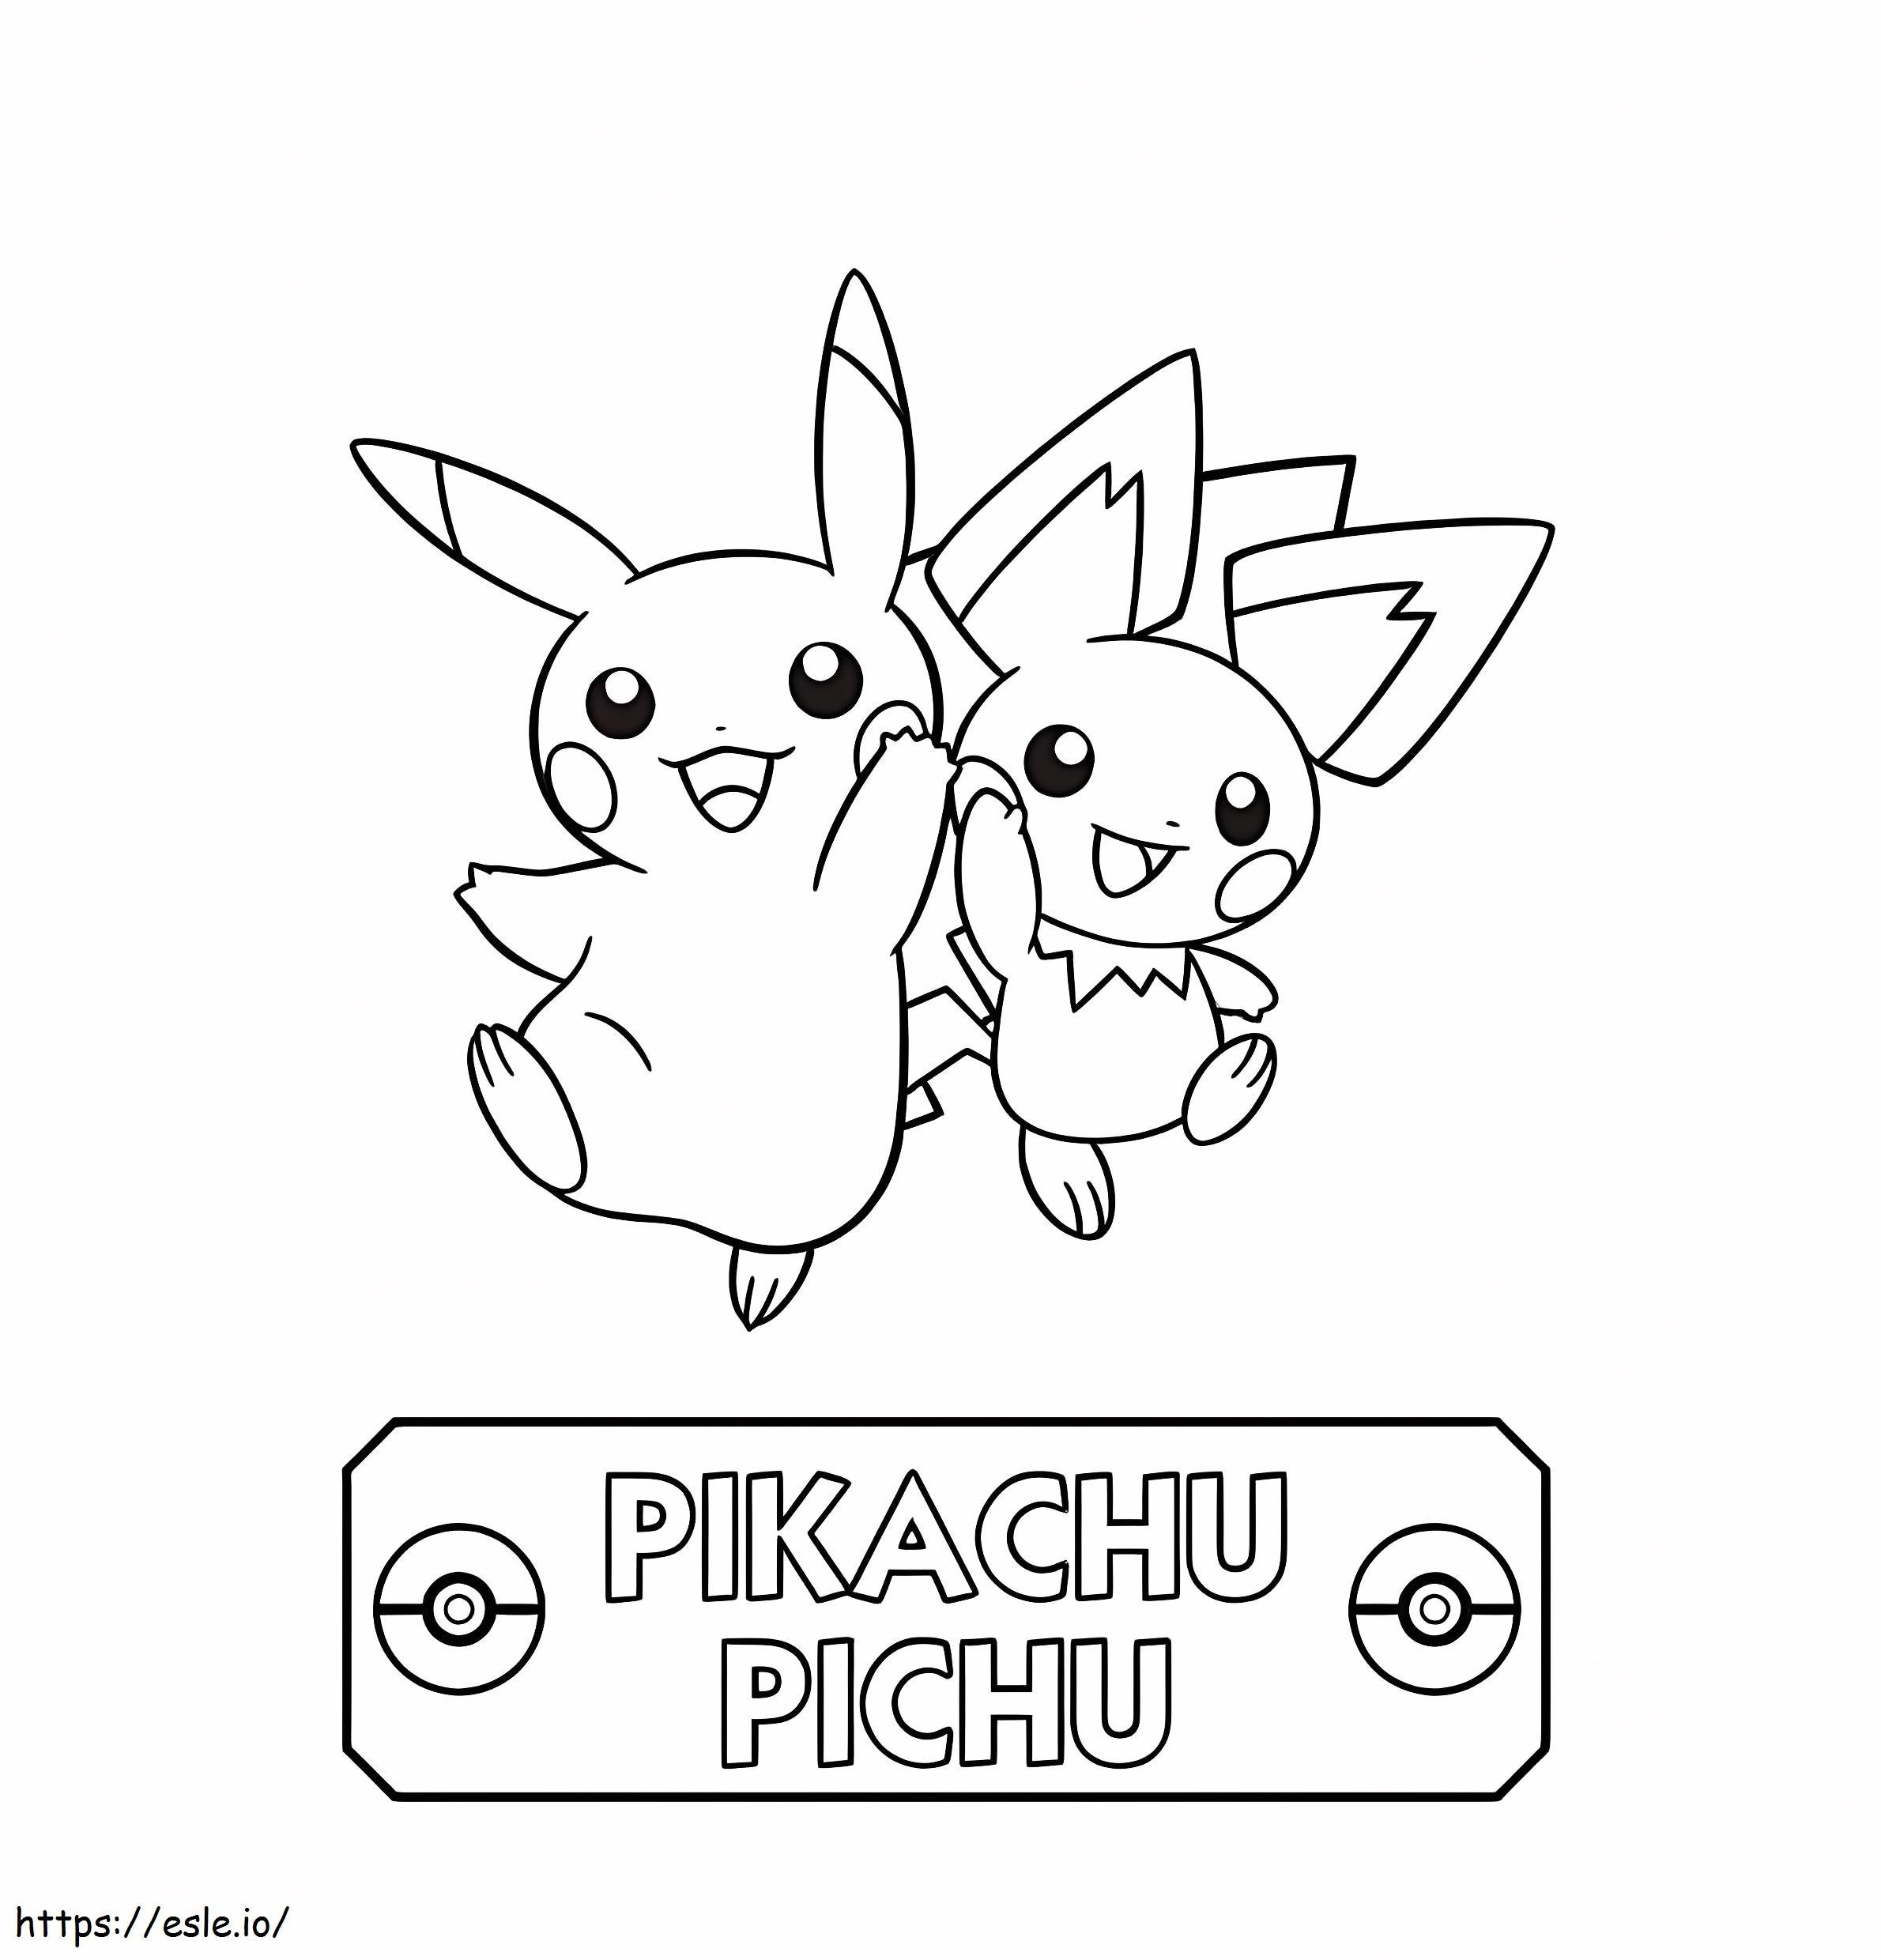 Pichu e Pikachu saltano da colorare